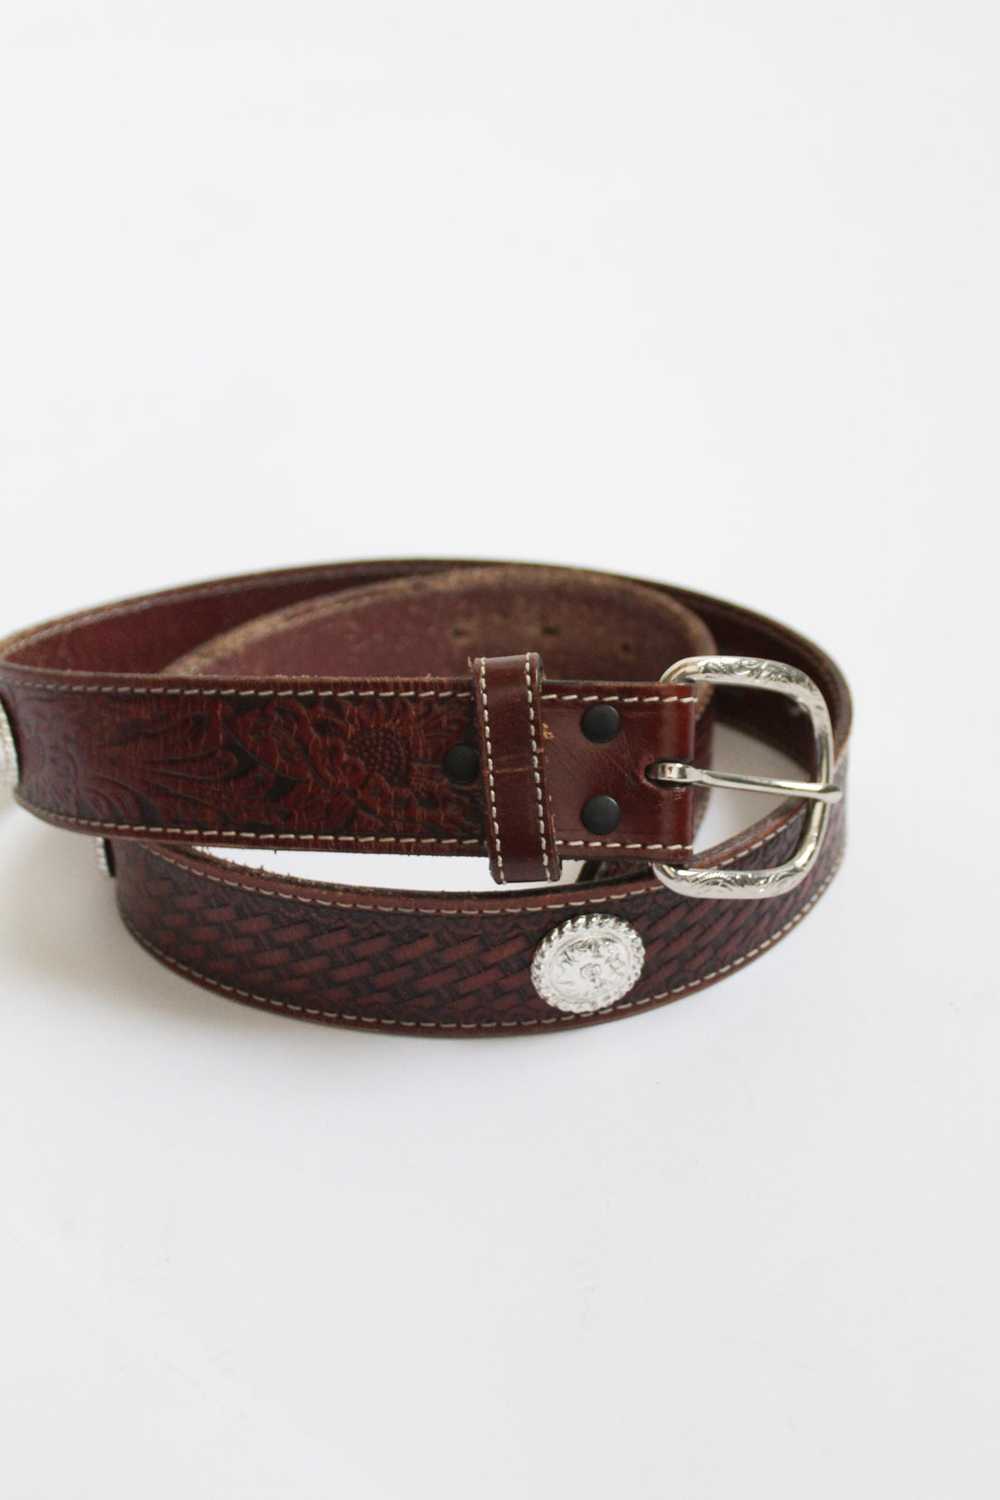 tooled leather belt - image 5